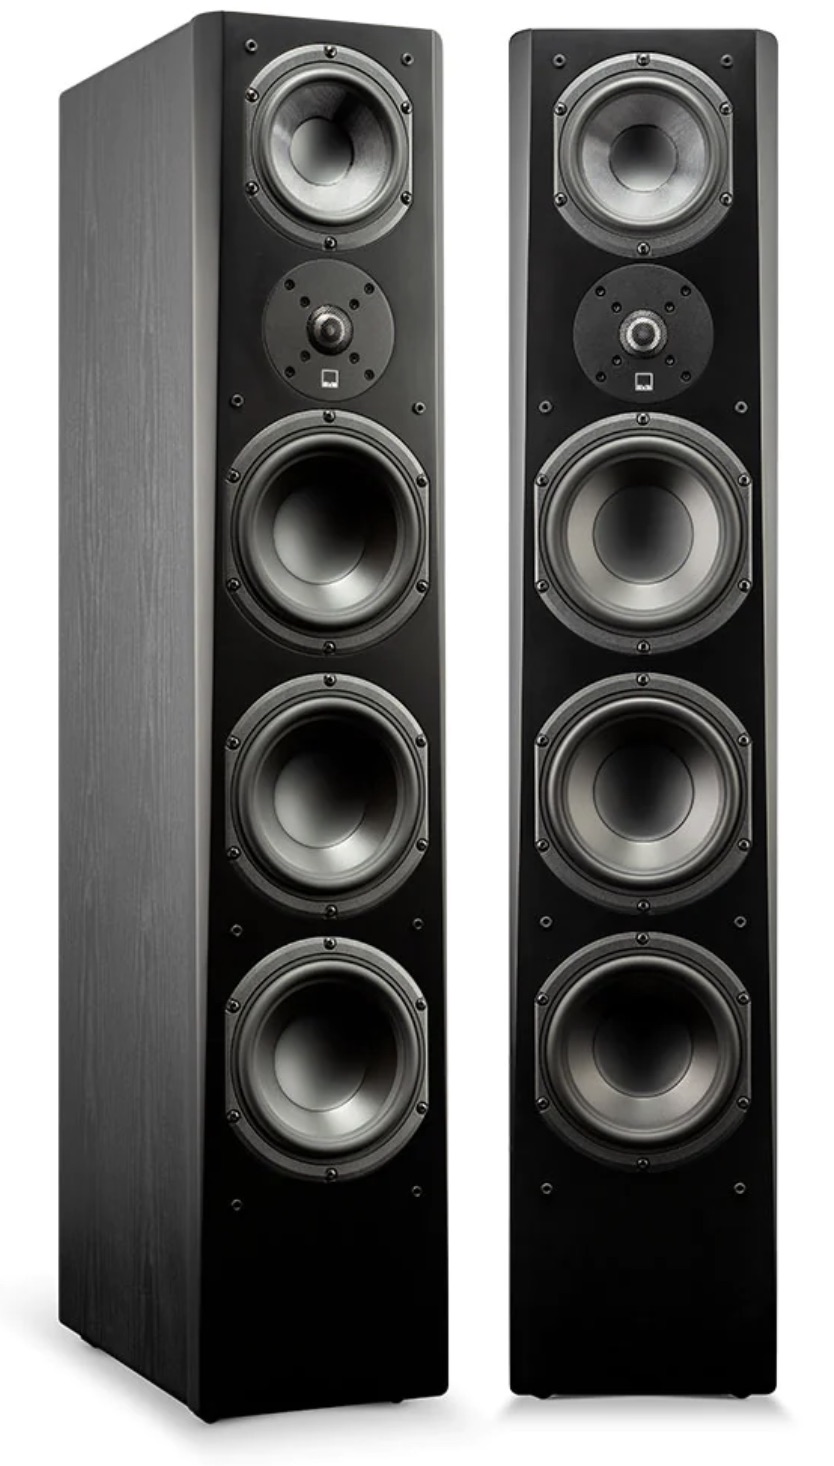 SVS Prime Pinnacle speakers